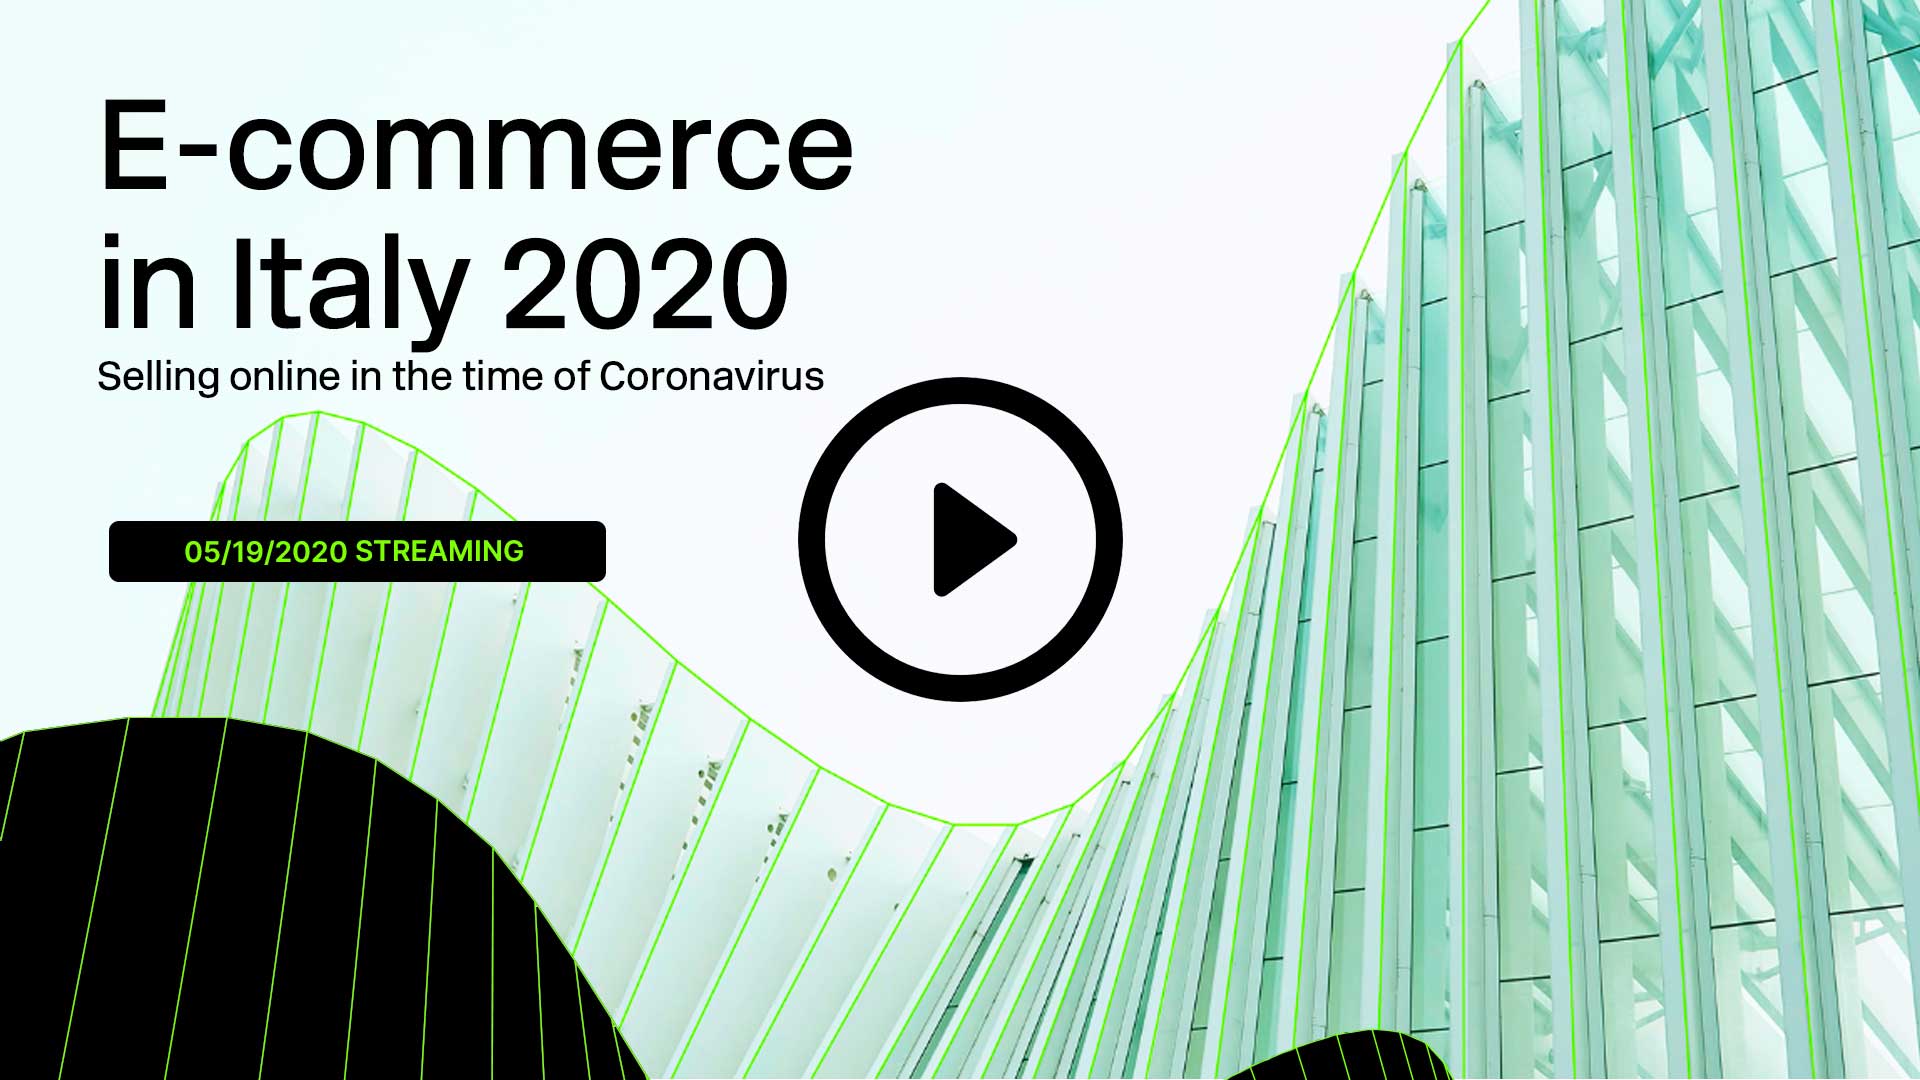 Presentazione - Ecommerce in Italy 2020